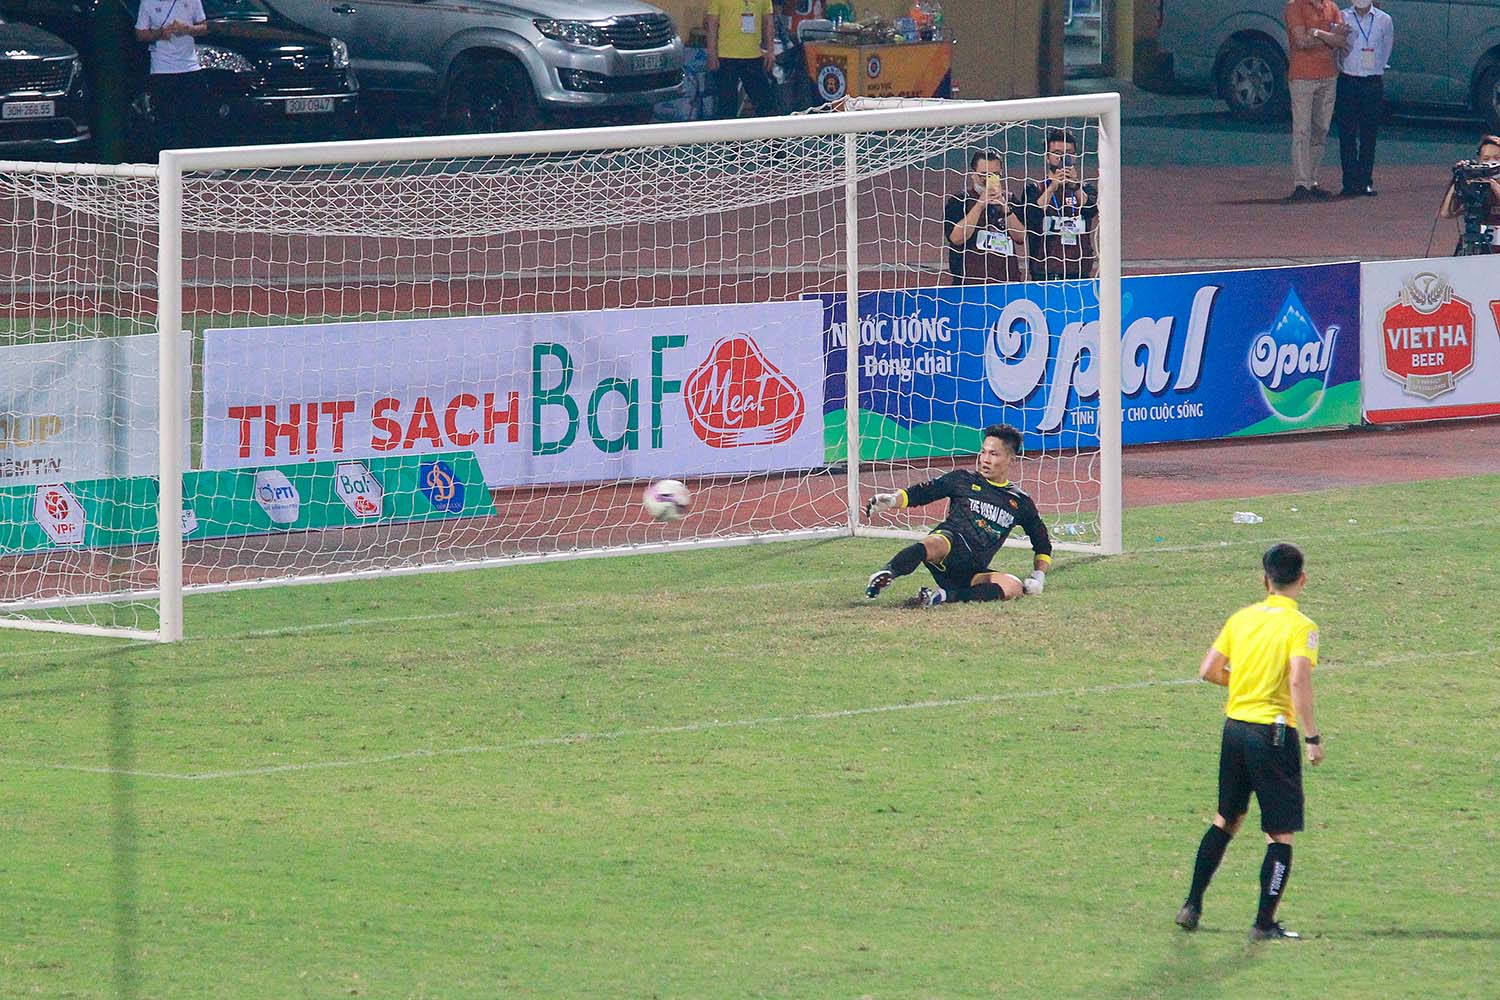 Trở lại với trận đấu ở vòng loại cúp Quốc gia, CLB Hà Nội đã dễ dàng thắng CLB CAND với tỉ số 4-0. Với các bàn thắng của Tuấn Hải (cú đúp), Việt Anh và Văn Quyết.